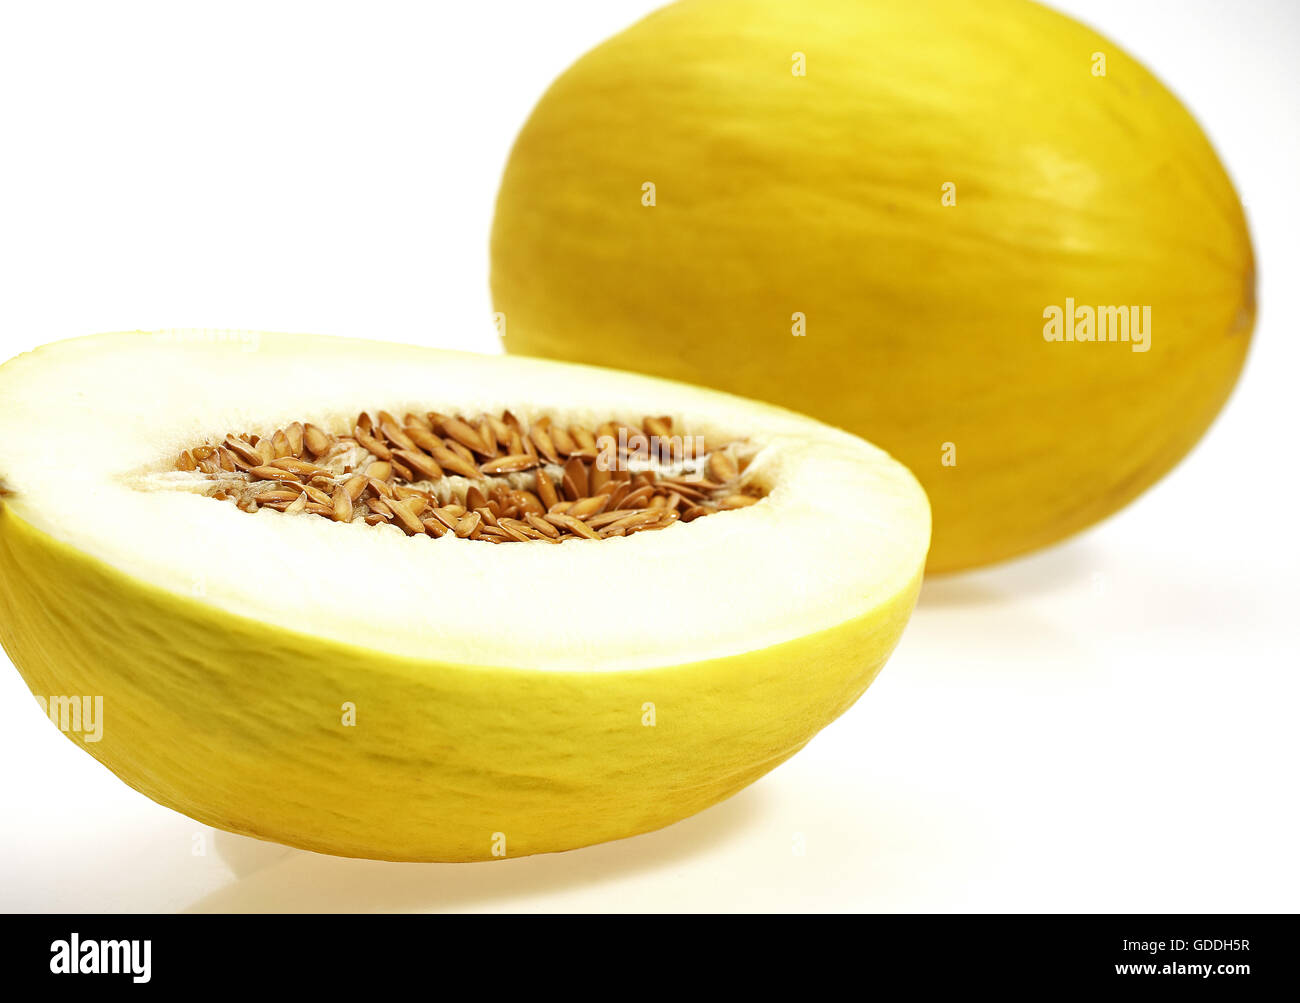 Bilan de saison en Espagne (Melon)